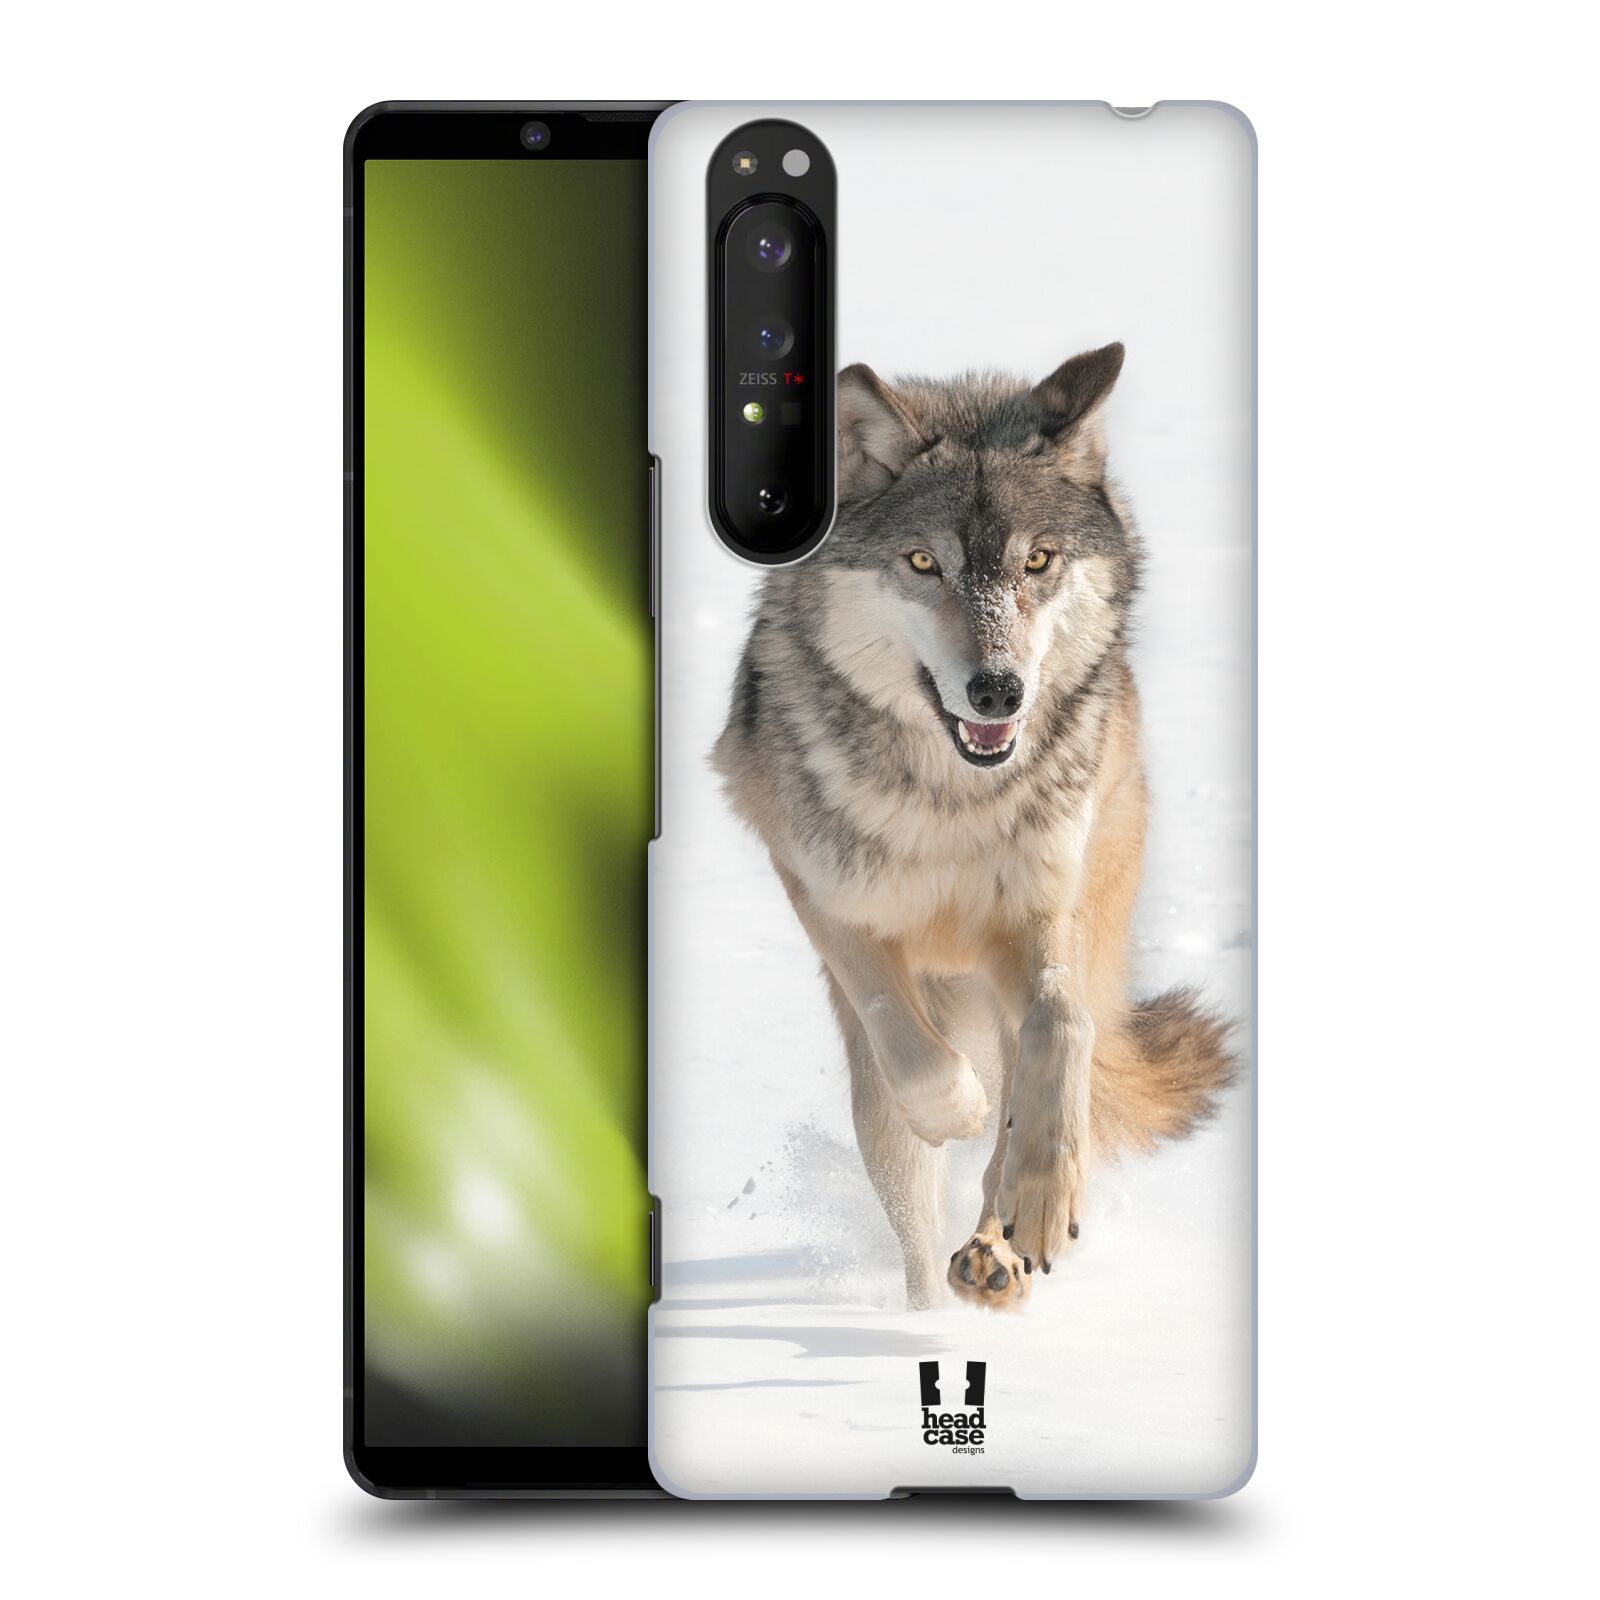 Zadní obal pro mobil Sony Xperia 1 II - HEAD CASE - Svět zvířat divoký vlk